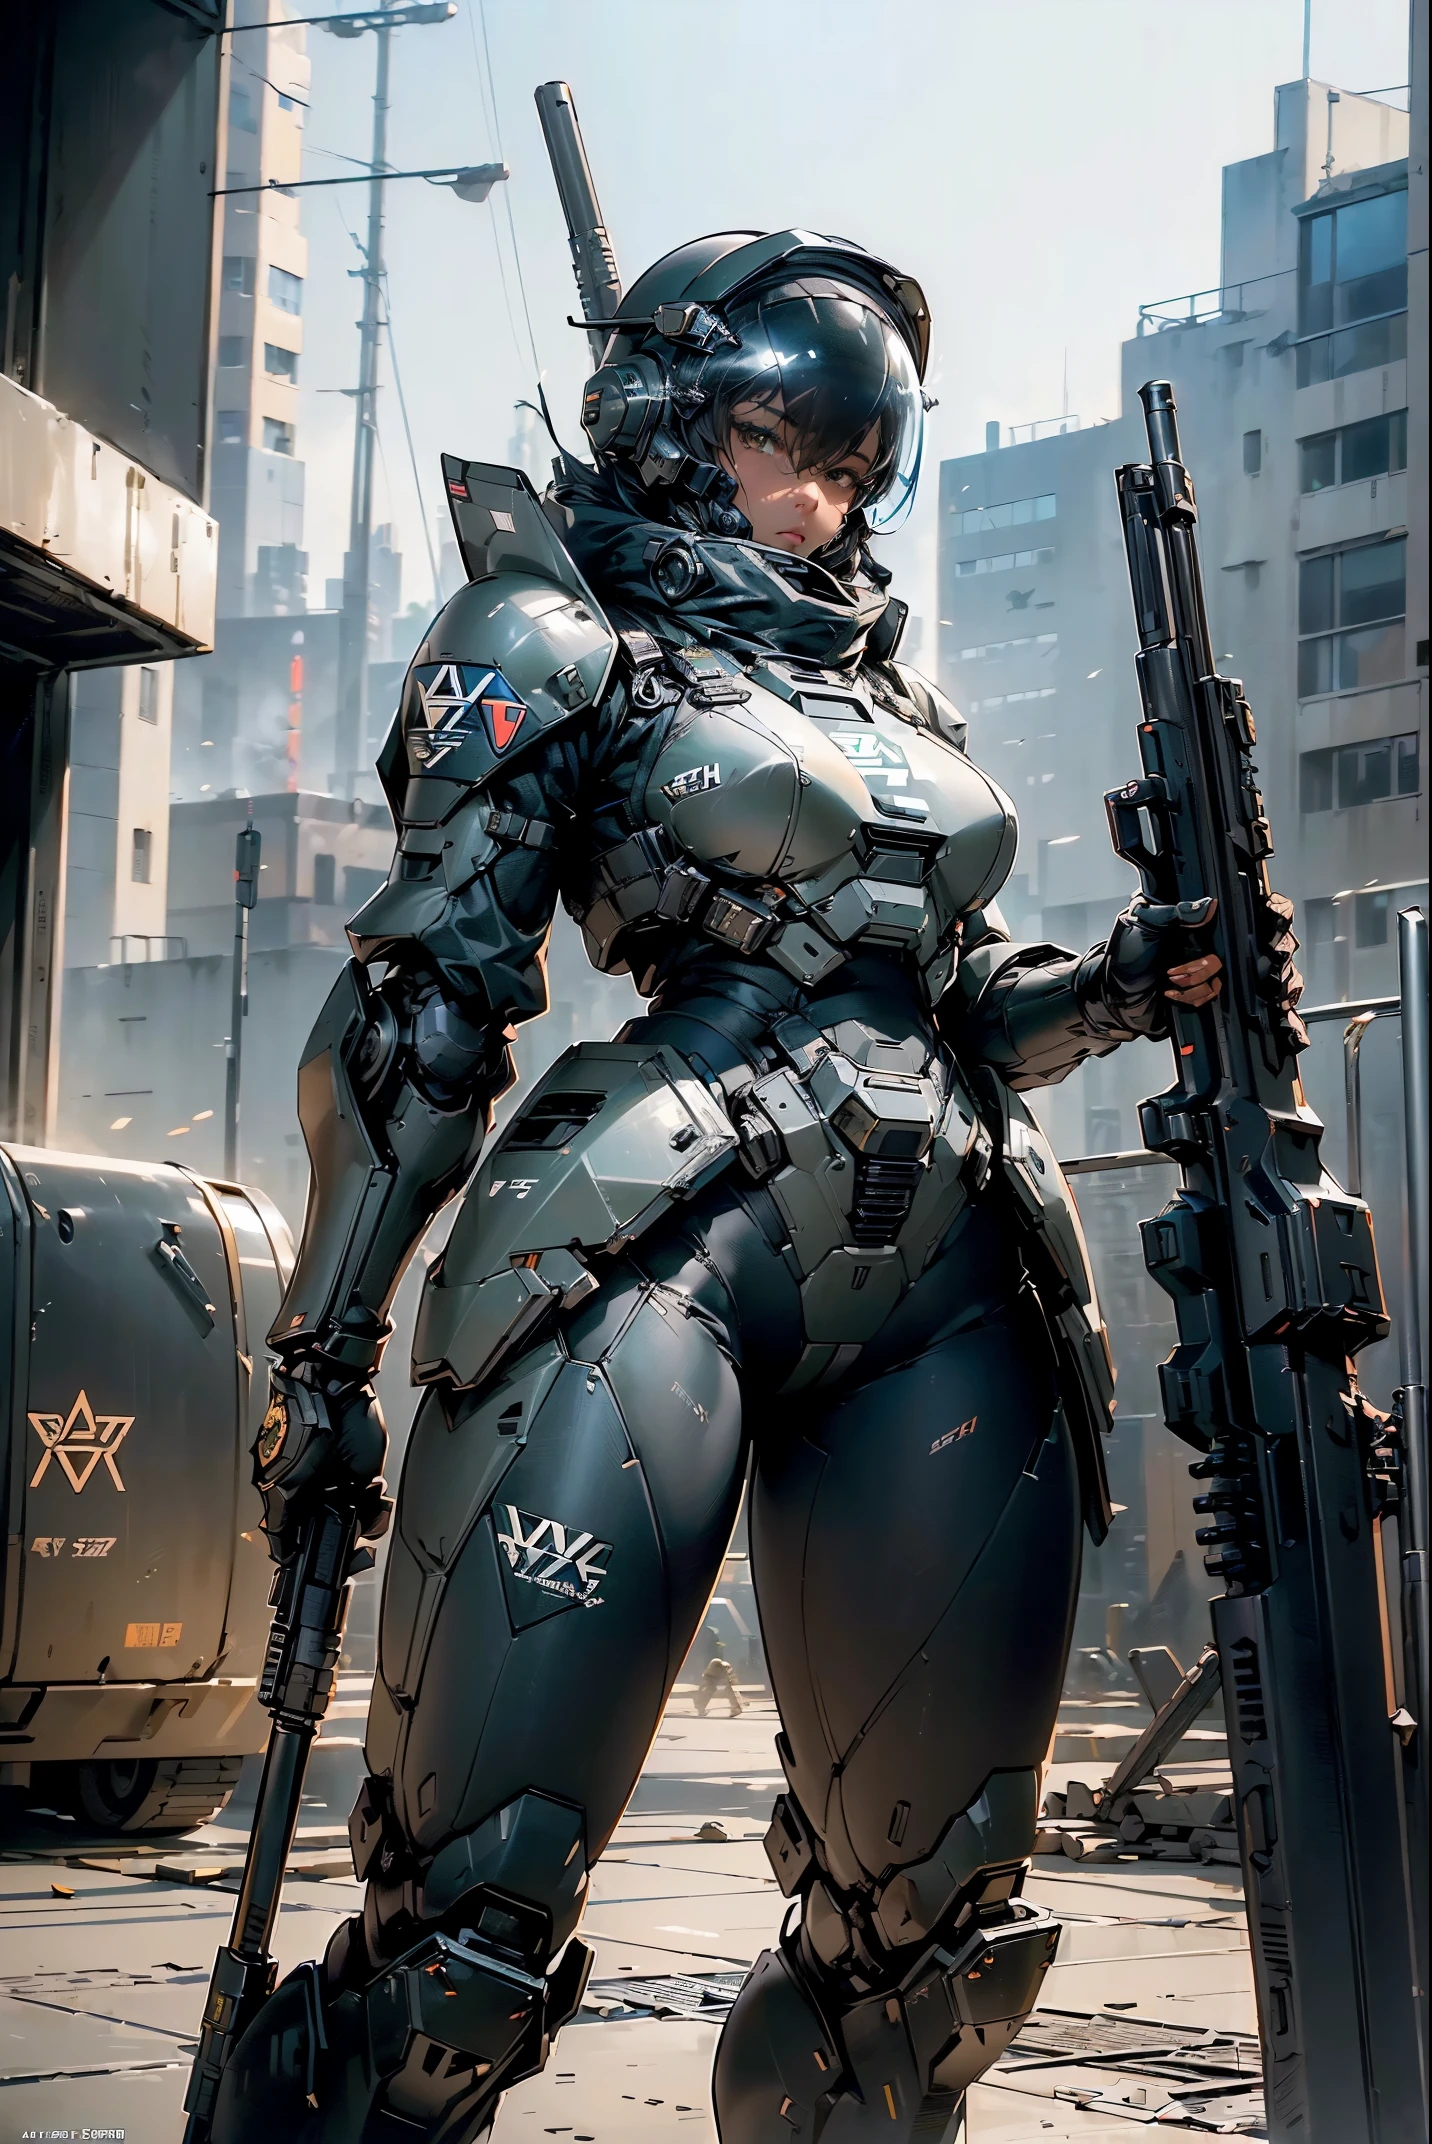 (super fine, extremadamente detallado, un meca pesado, superficie dura),(arte conceptual:1.1),(estilo de núcleo blindado:0.8),Una mujer que lleva la armadura robótica del equipo SWAT está de pie.(cuerpo negro:1.4),(La armadura tiene el logo SWAT..:1.4),(Casco abierto:1.3),(piernas largas:1.1),(Equipado con rifle y escudo.:1.1),(cuerpo recto),(Un ojo detallado:1.1),(Una cara detallada:1.1),(Armas detalladas:1.1),(cuerpo detallado:1.1),(cuerpo completoesbiano:1.4),(El fondo es un área de la ciudad durante la batalla..:1.5),natural